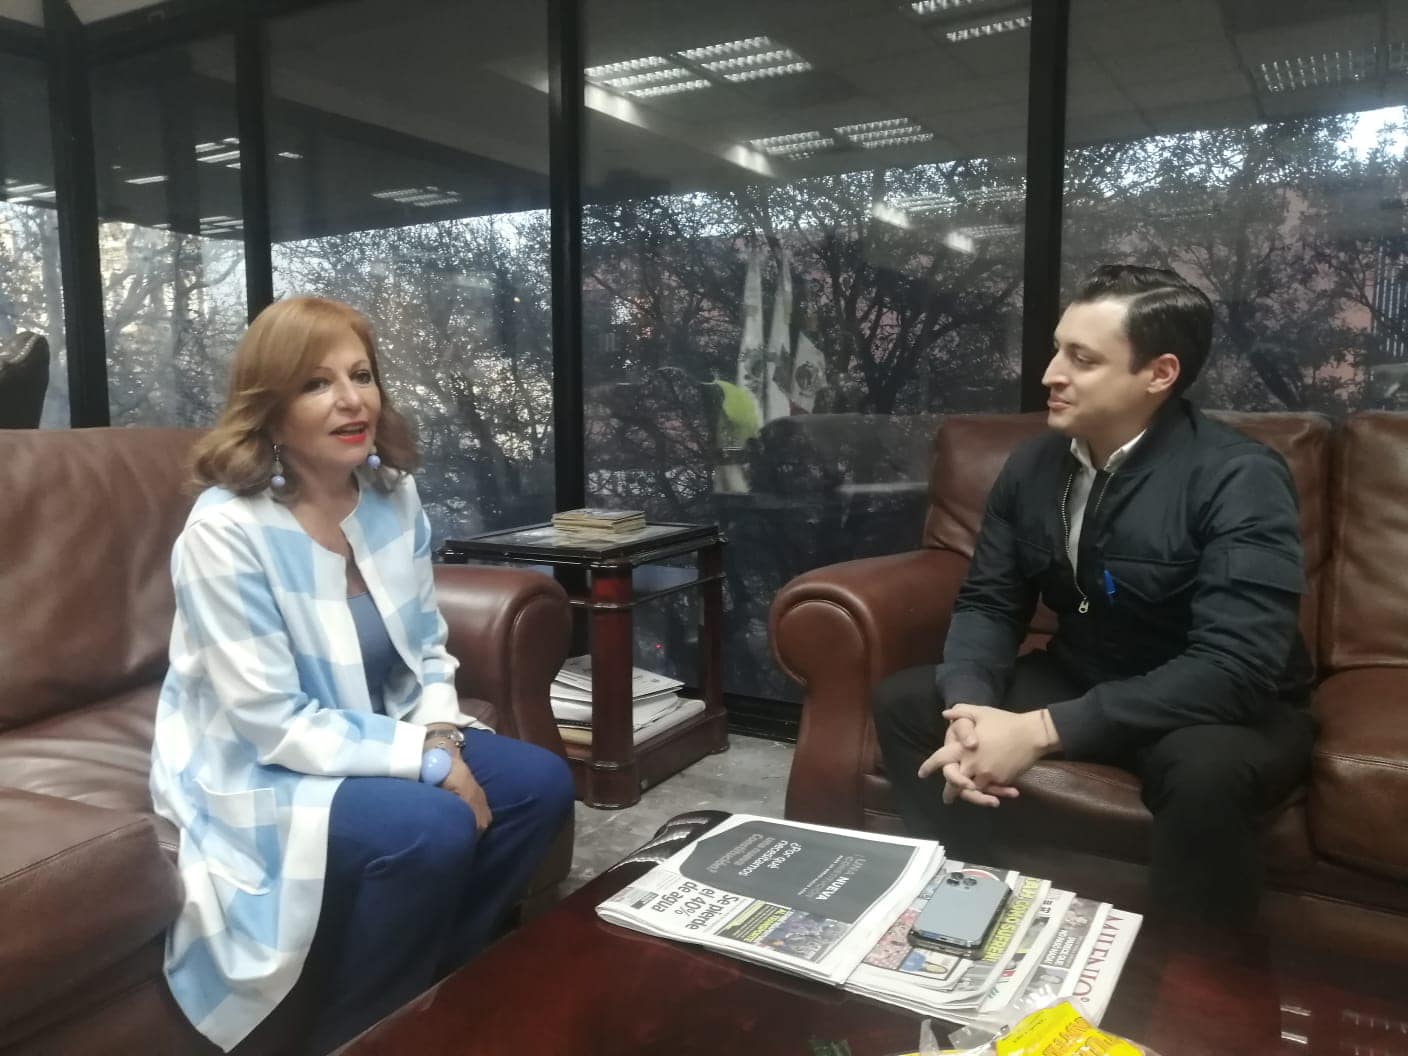 El emotivo encuentro de la periodista Valentina Alazrraki con Luis Donaldo Colosio Riojas, alcalde de Monterrey